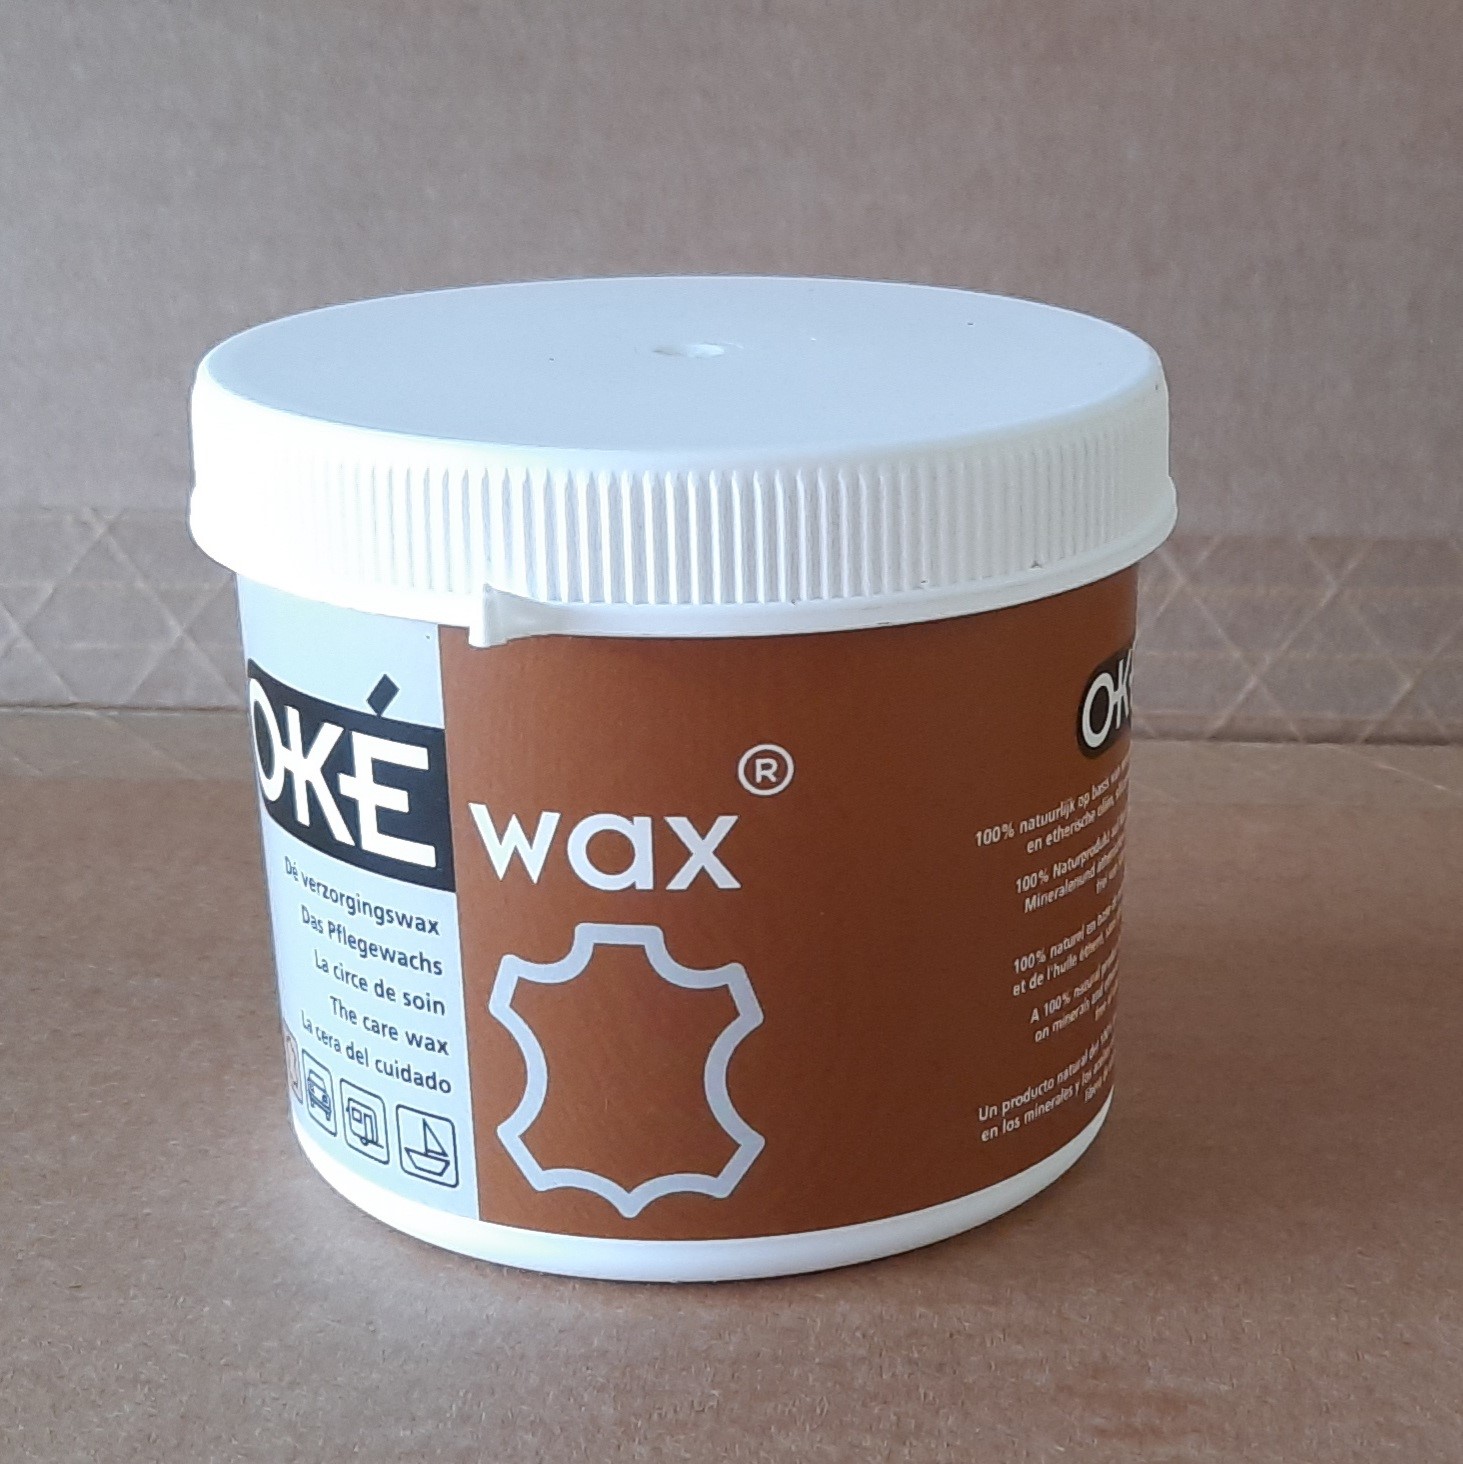 OKE-WAX